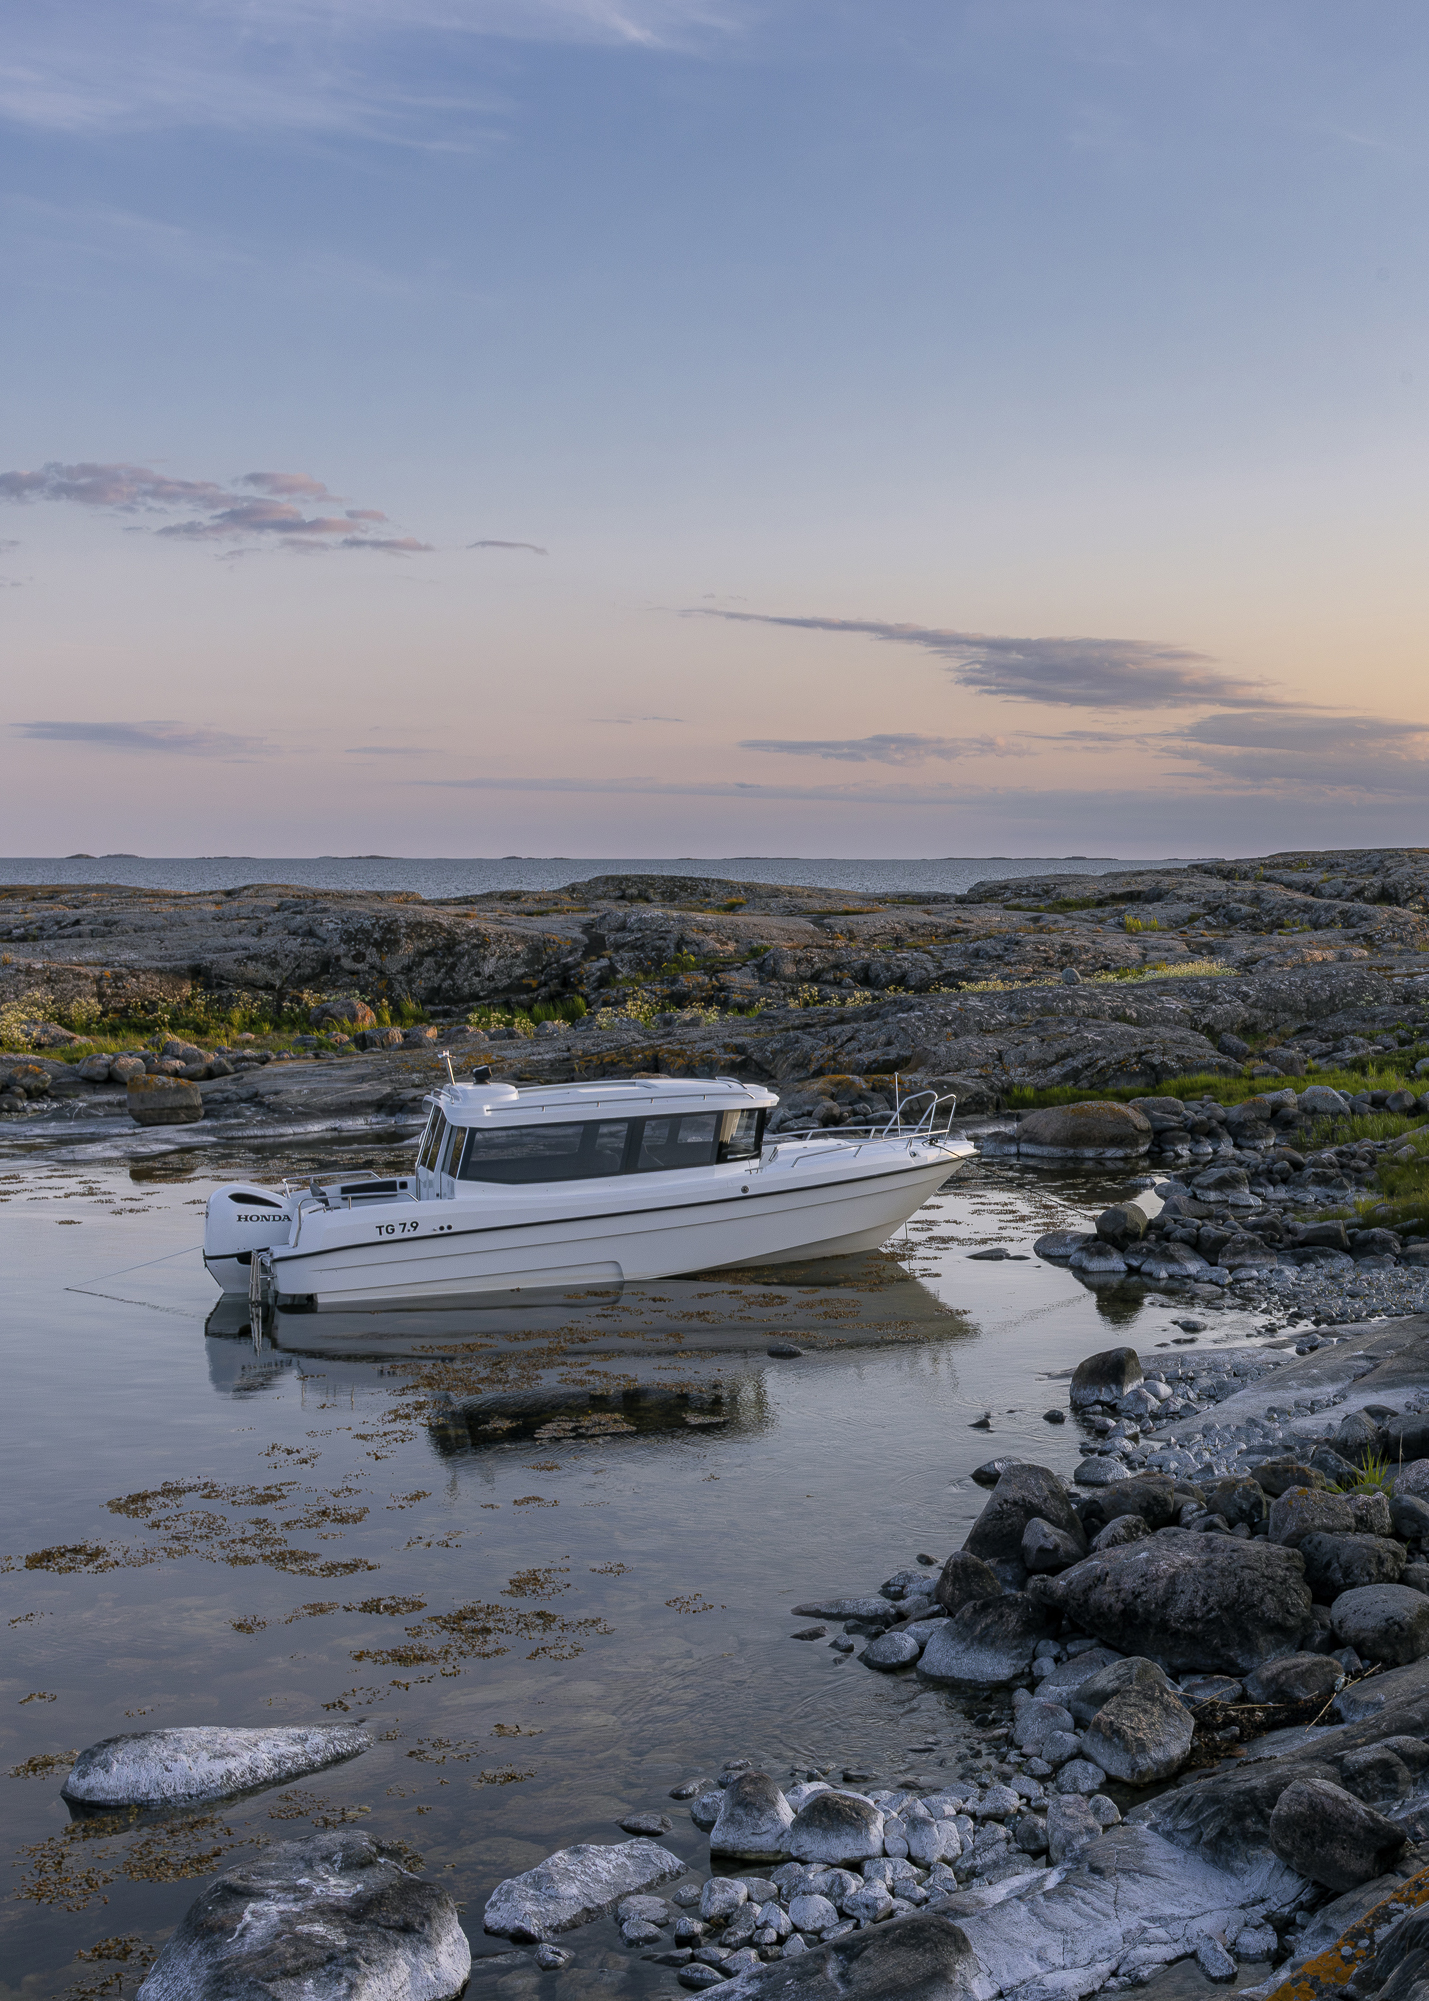 TG 7.9 -kabinbåt står för ankare i lugn naturhamn i solnedgången.